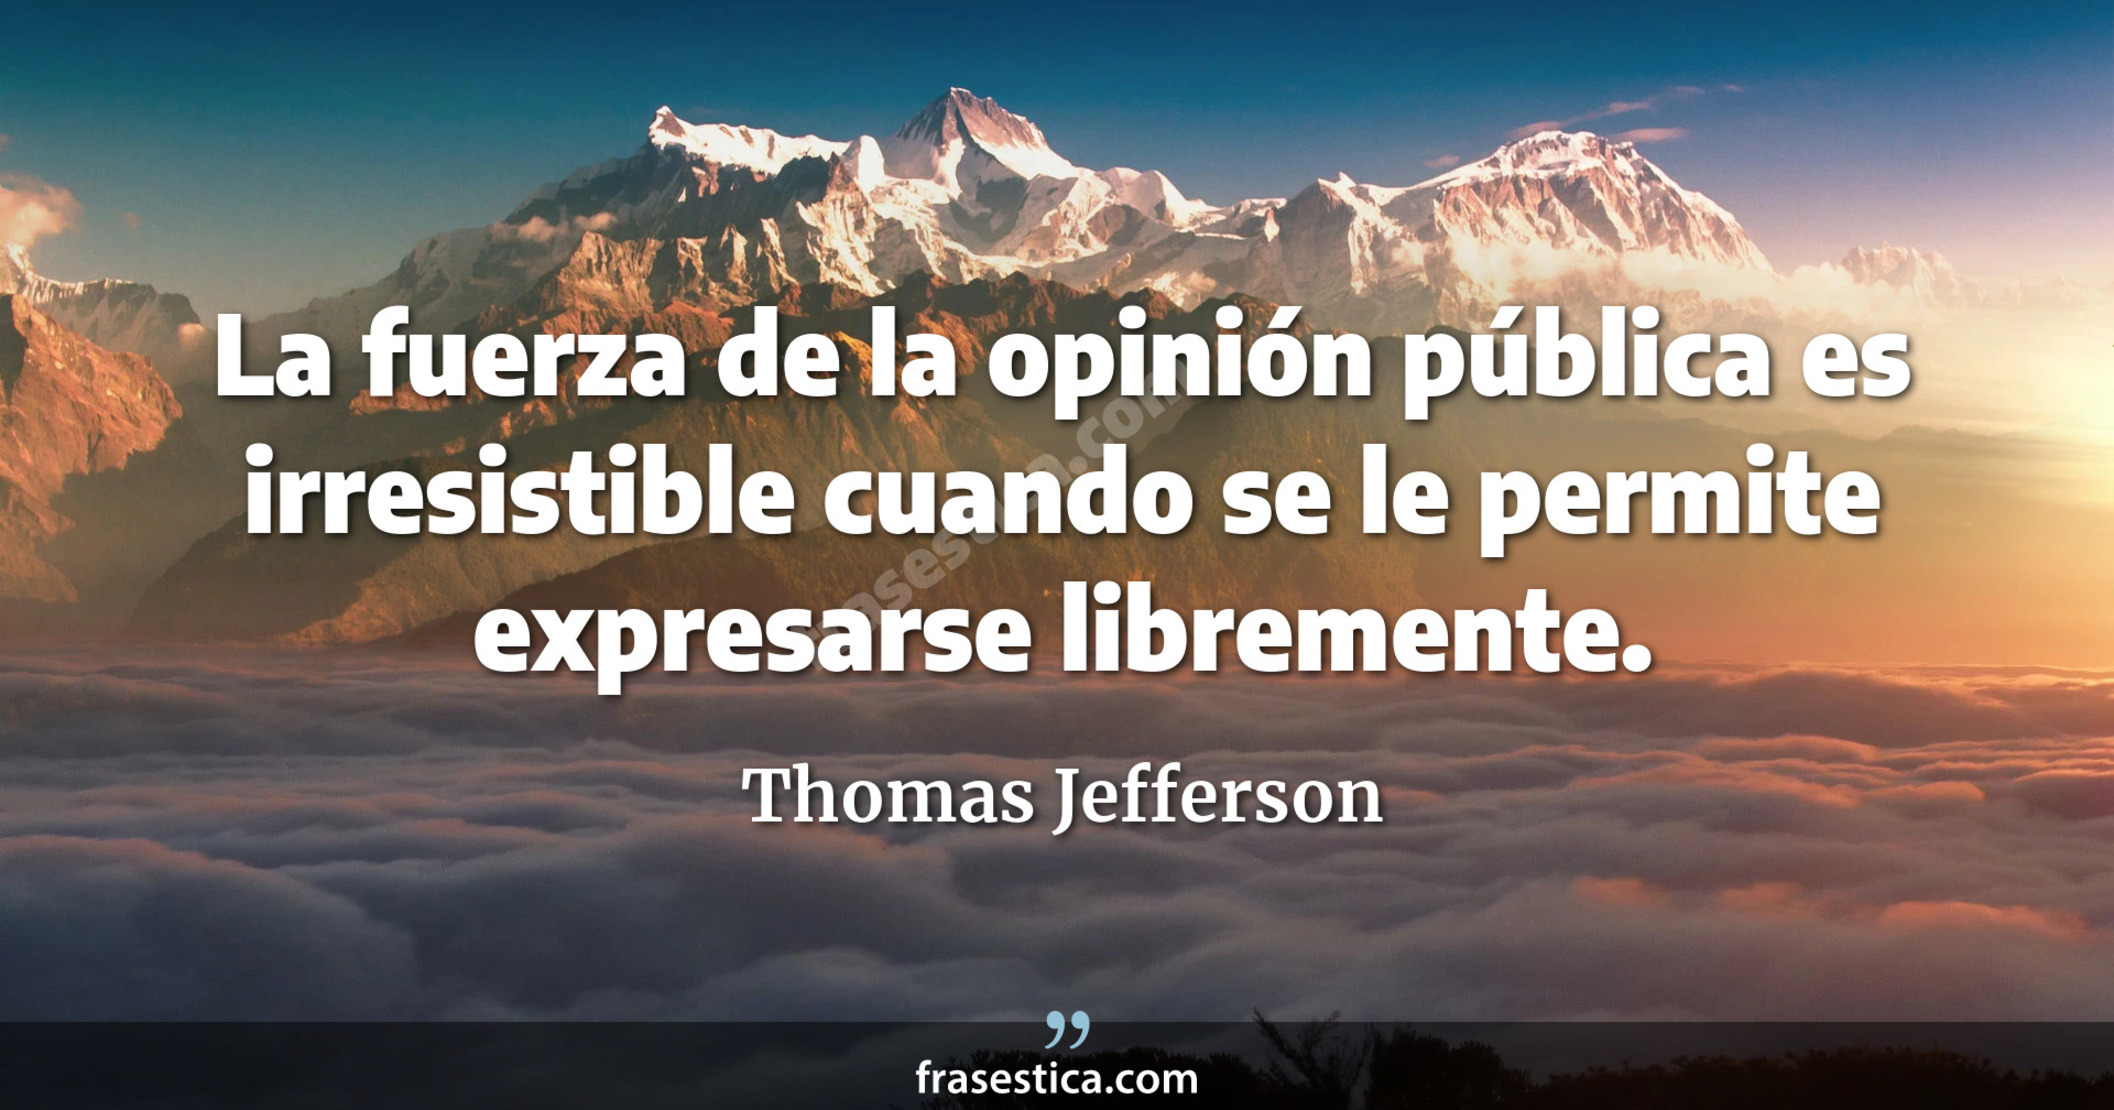 La fuerza de la opinión pública es irresistible cuando se le permite expresarse libremente. - Thomas Jefferson